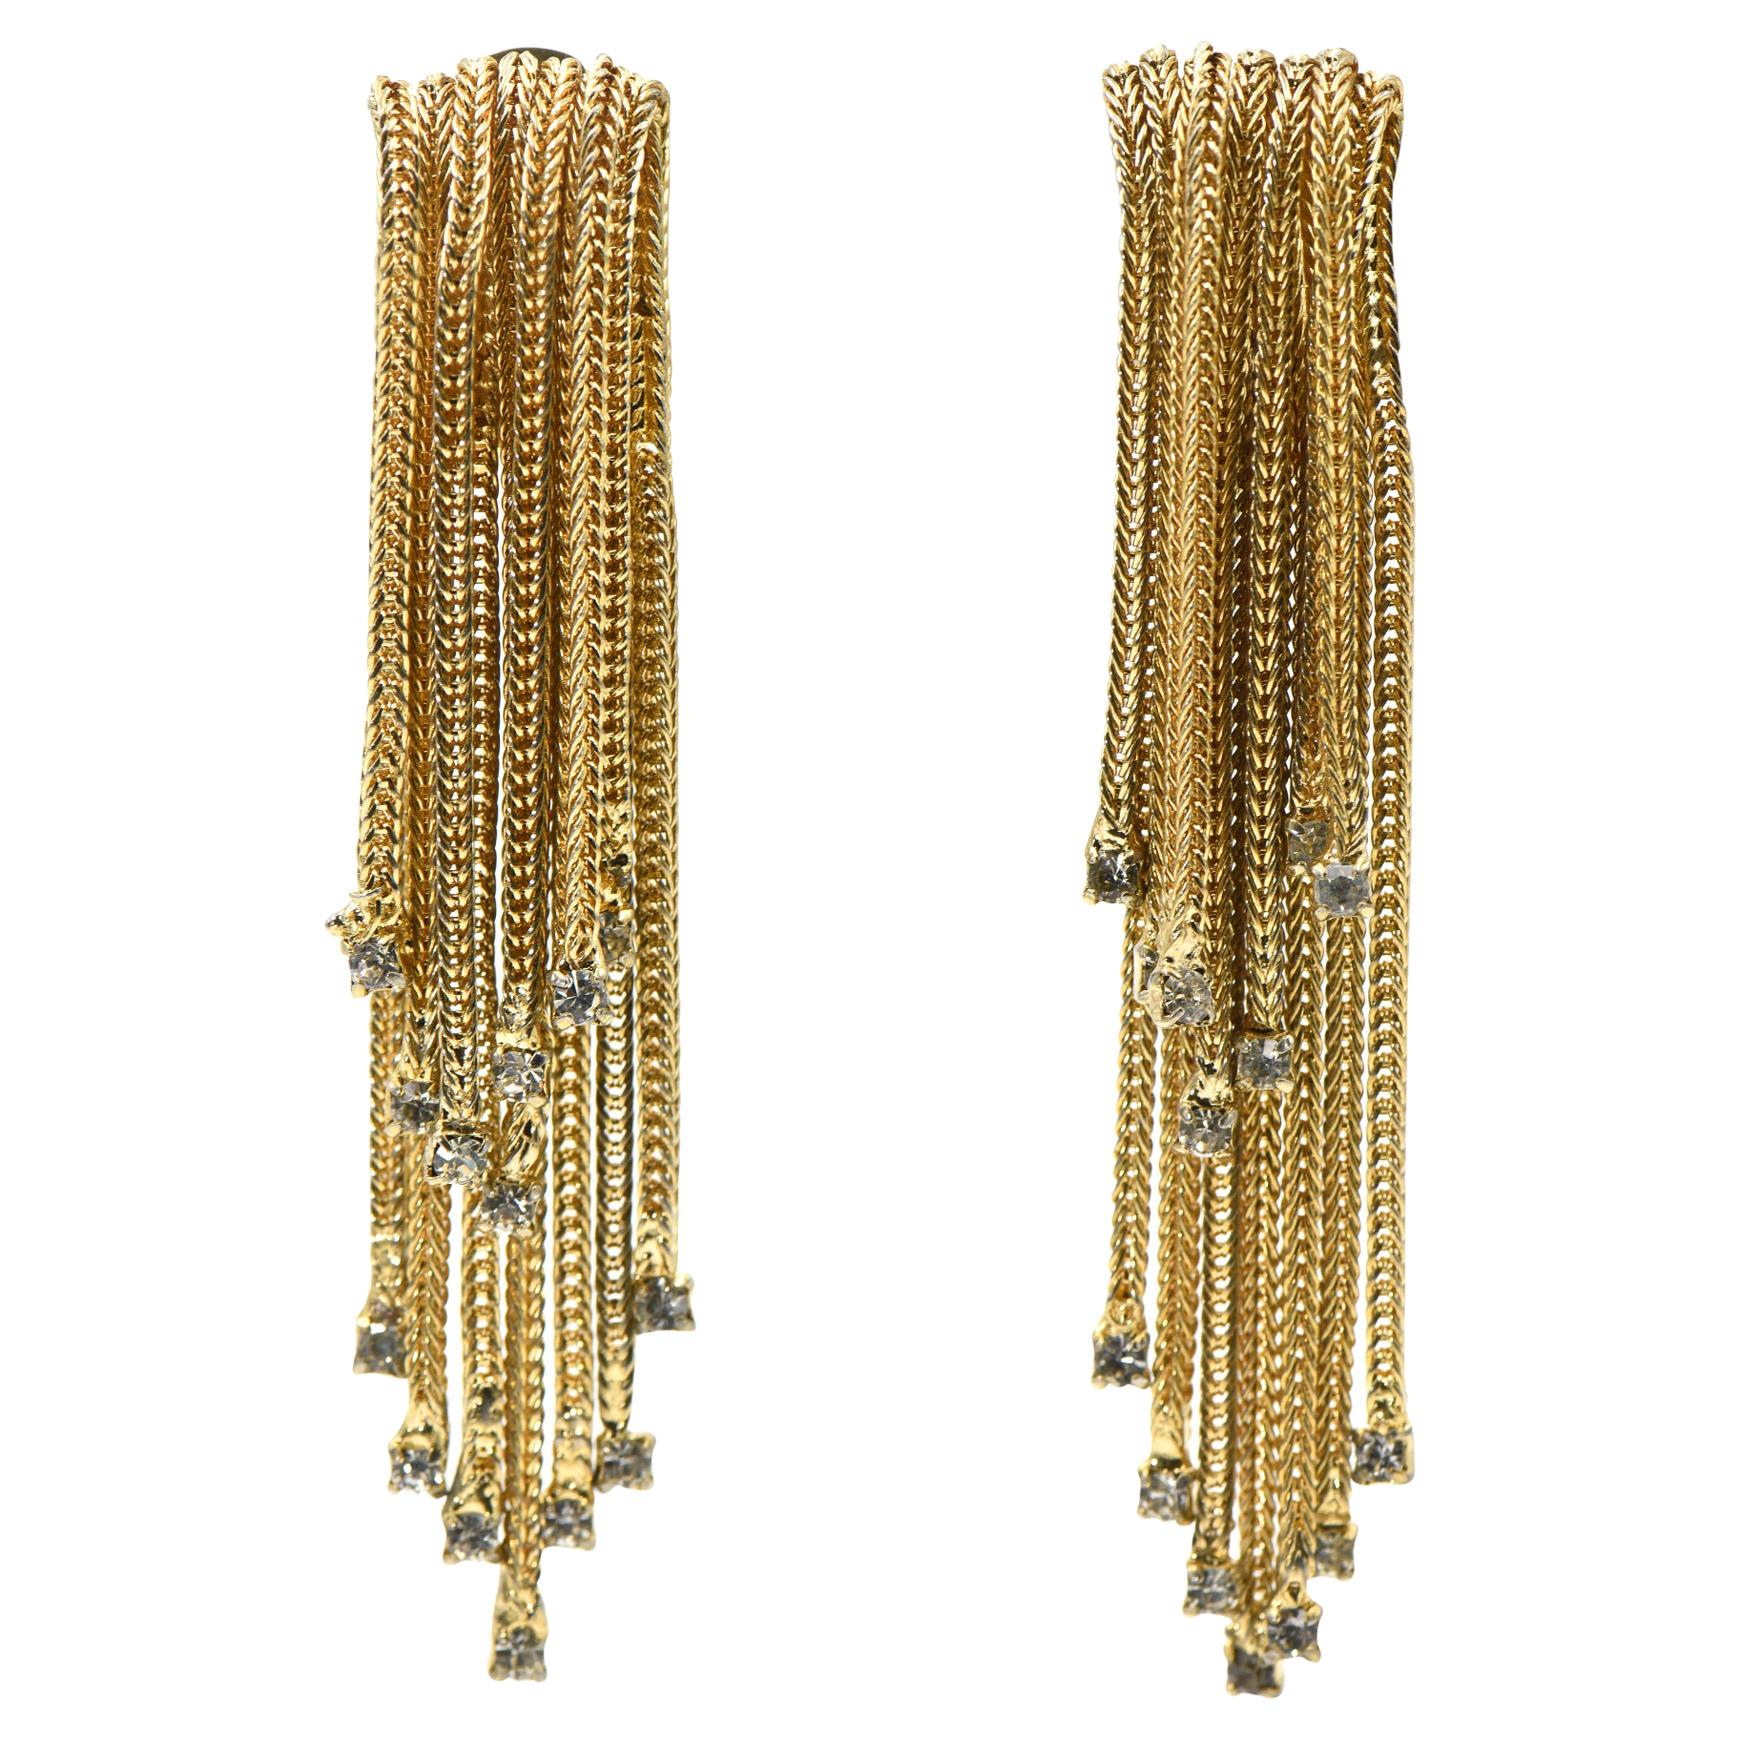 3" Long Hattie Carnegie Rhinestone Gold Waterfall Tassel Dangling Earrings